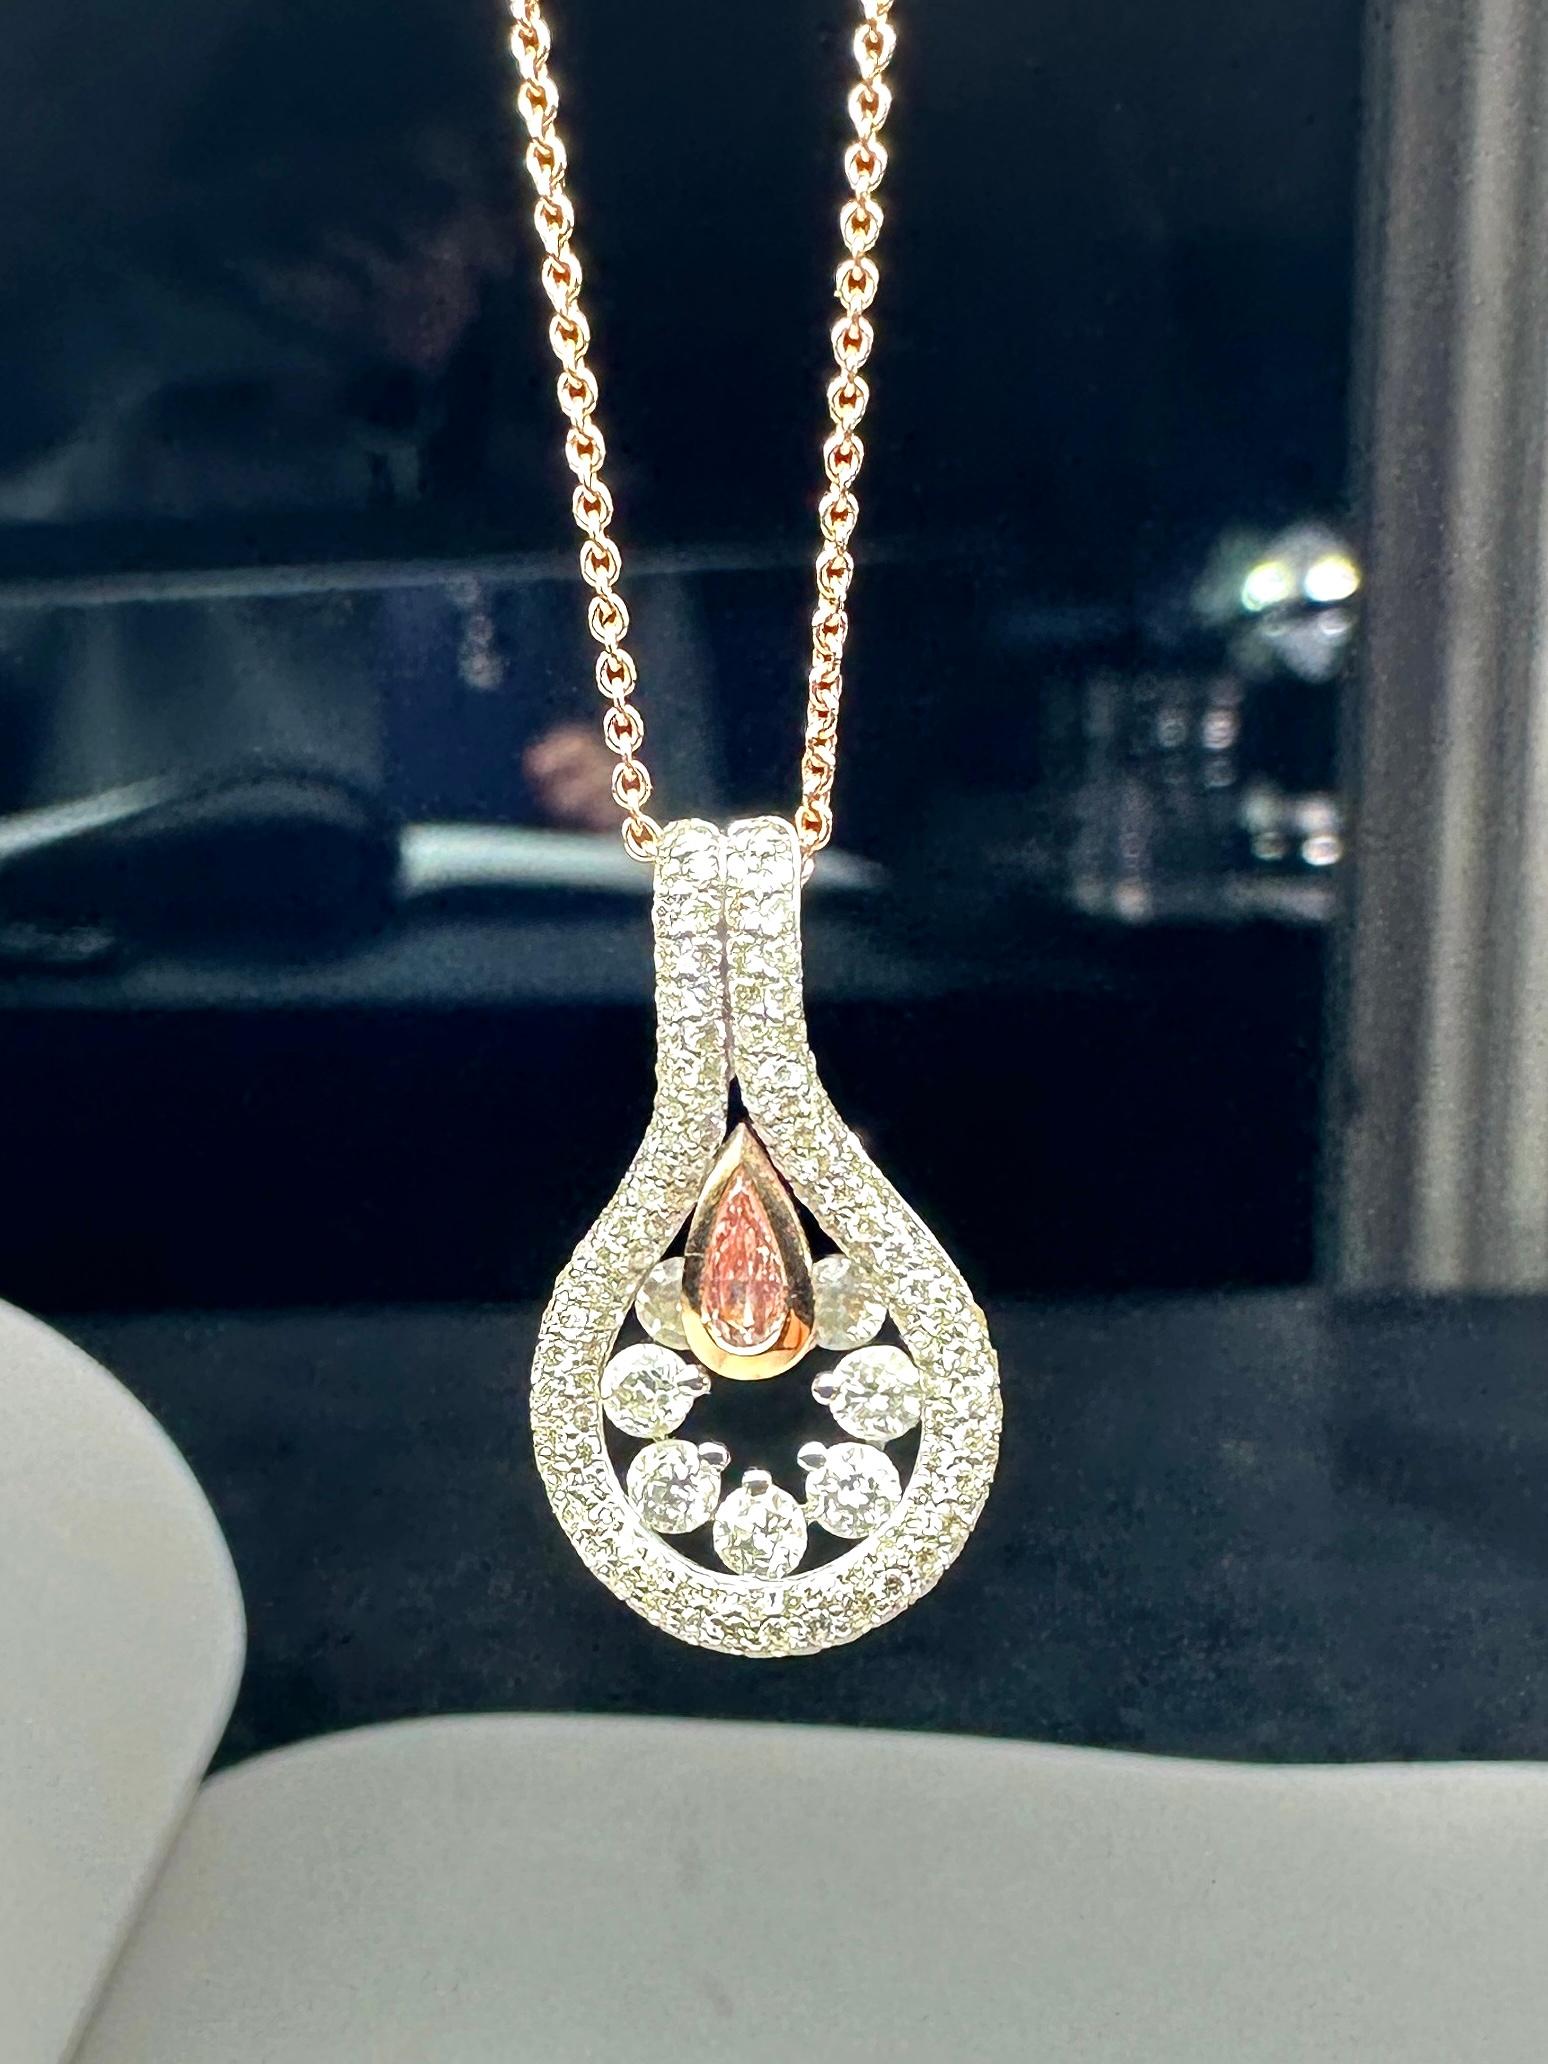 Collier à pendentifs en diamant rose en or blanc 18k.
Une simple goutte d'eau peut former des anneaux hypnotiques à la surface d'un liquide. Cette force tranquille est capturée dans ce diamant rose naturel en forme de poire, entouré de diamants